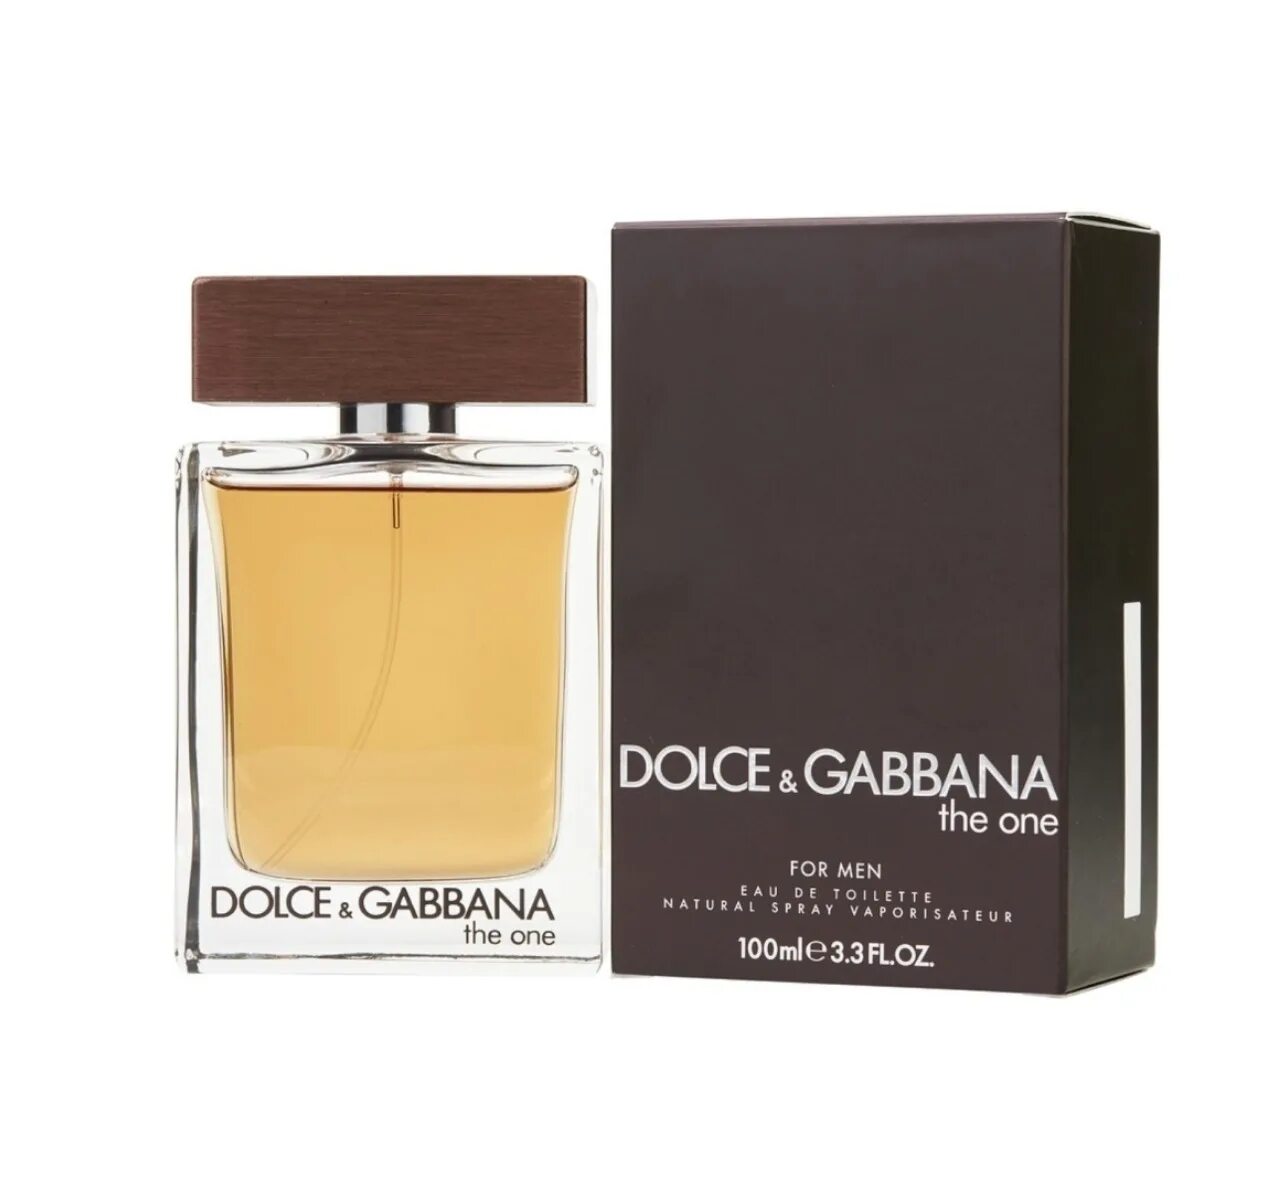 Dolce Gabbana the one for men Eau de Toilette. Dolce Gabbana the one for men Eau de Parfum 100мл. Dolce & Gabbana "the one for man Eau de Toilette" 100 ml. Dolce Gabbana the one for men 100ml EDT. Dolce gabbana 1